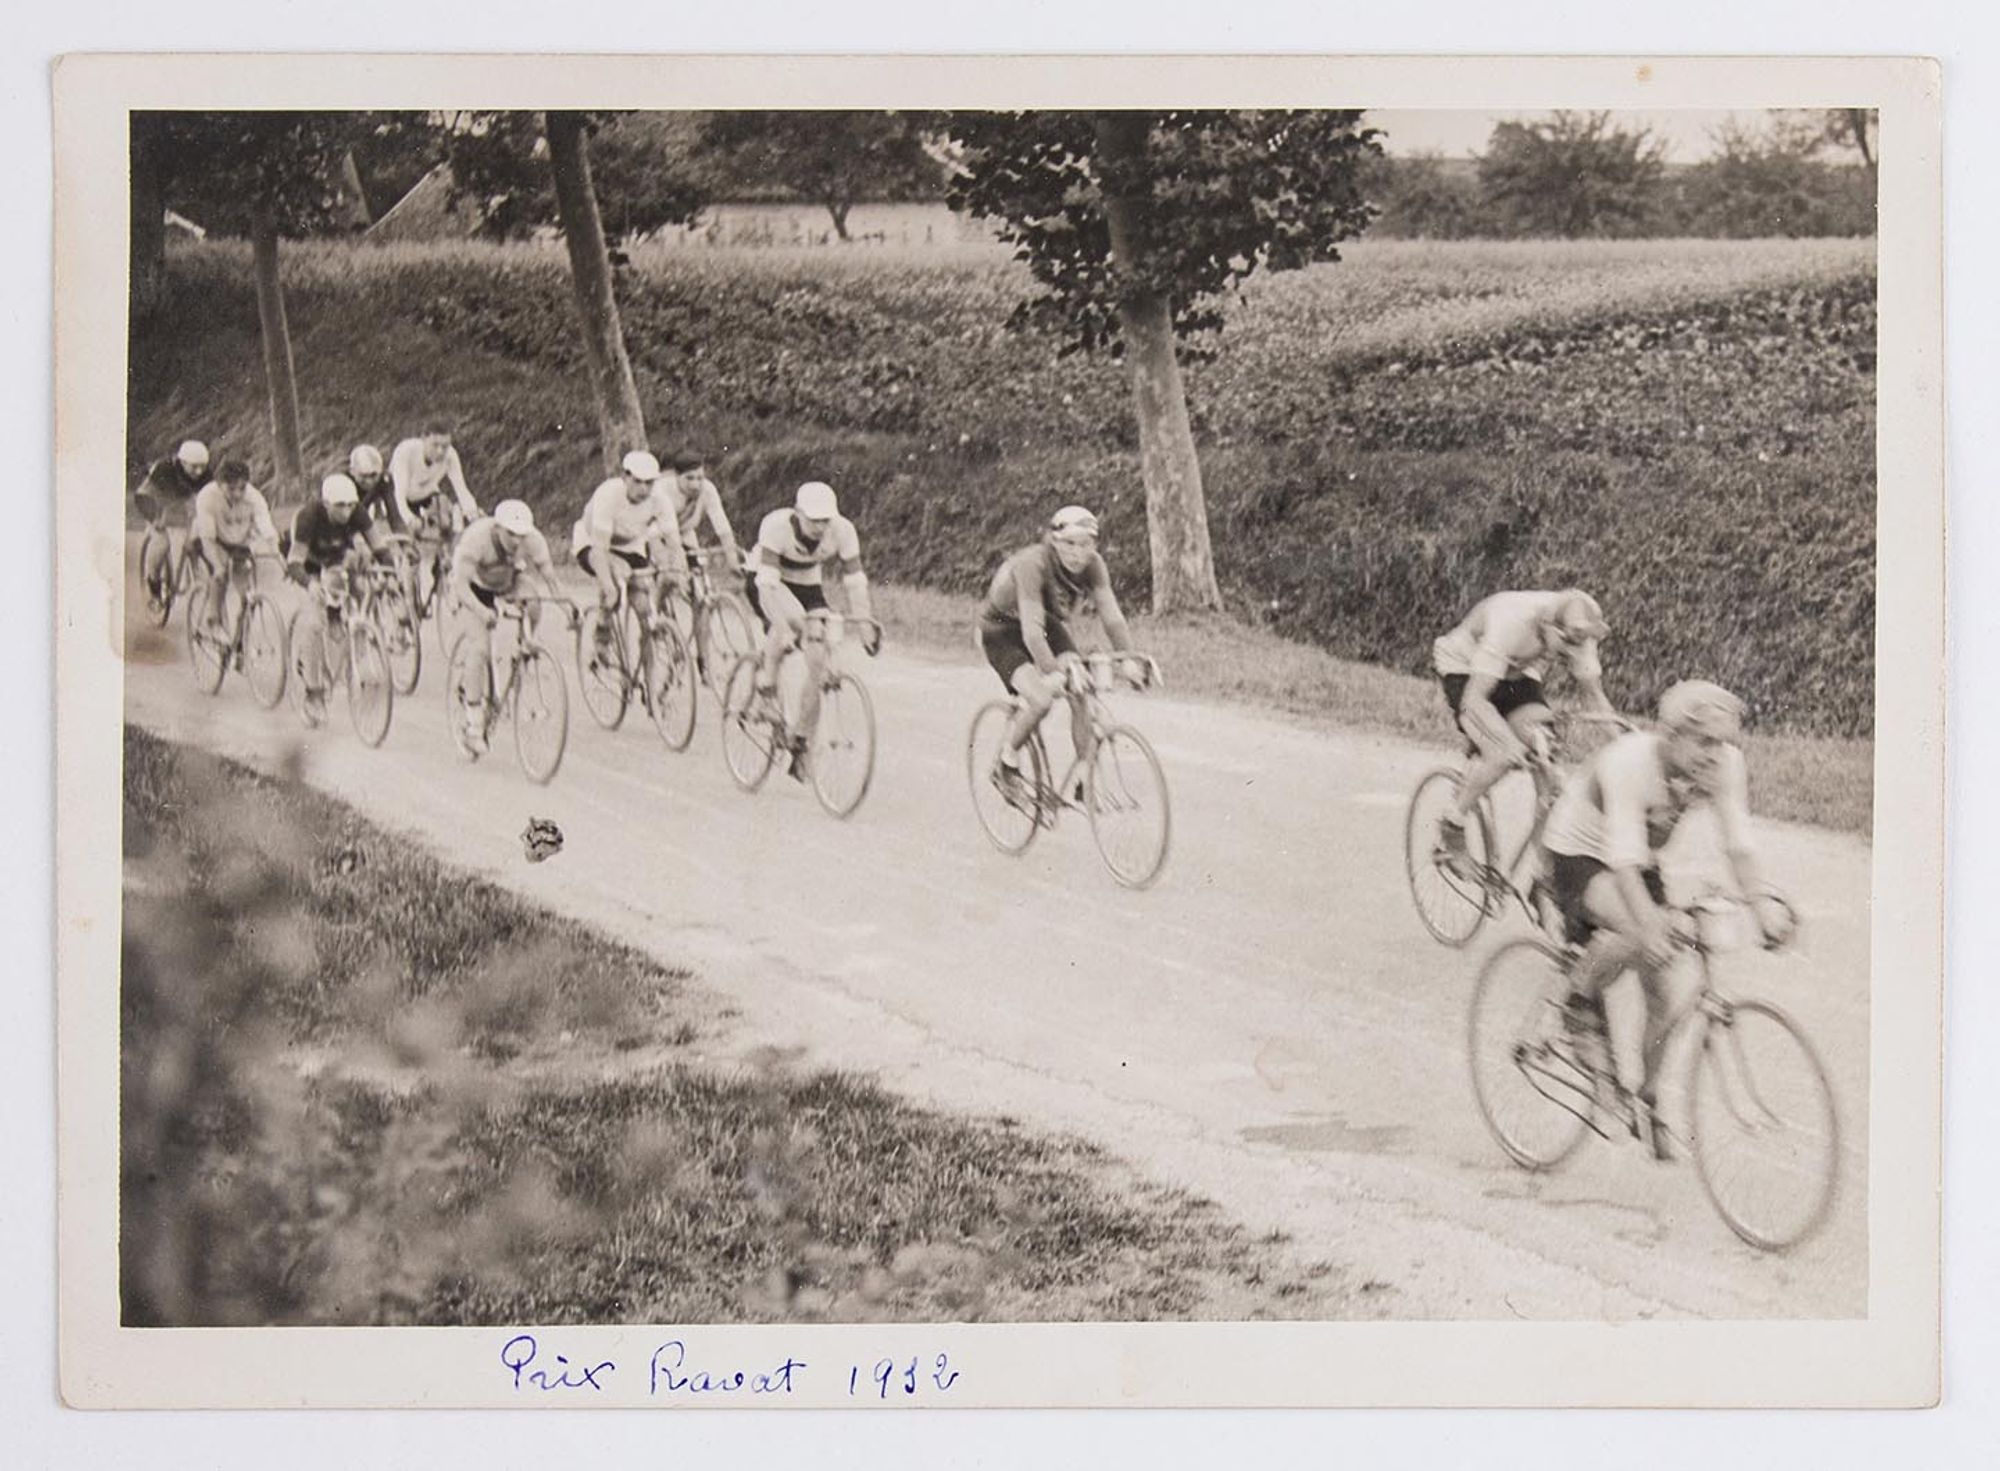 1932. Prix Ravat. Vue d'un groupe de coureurs cyclistes. Lieu à identifier.